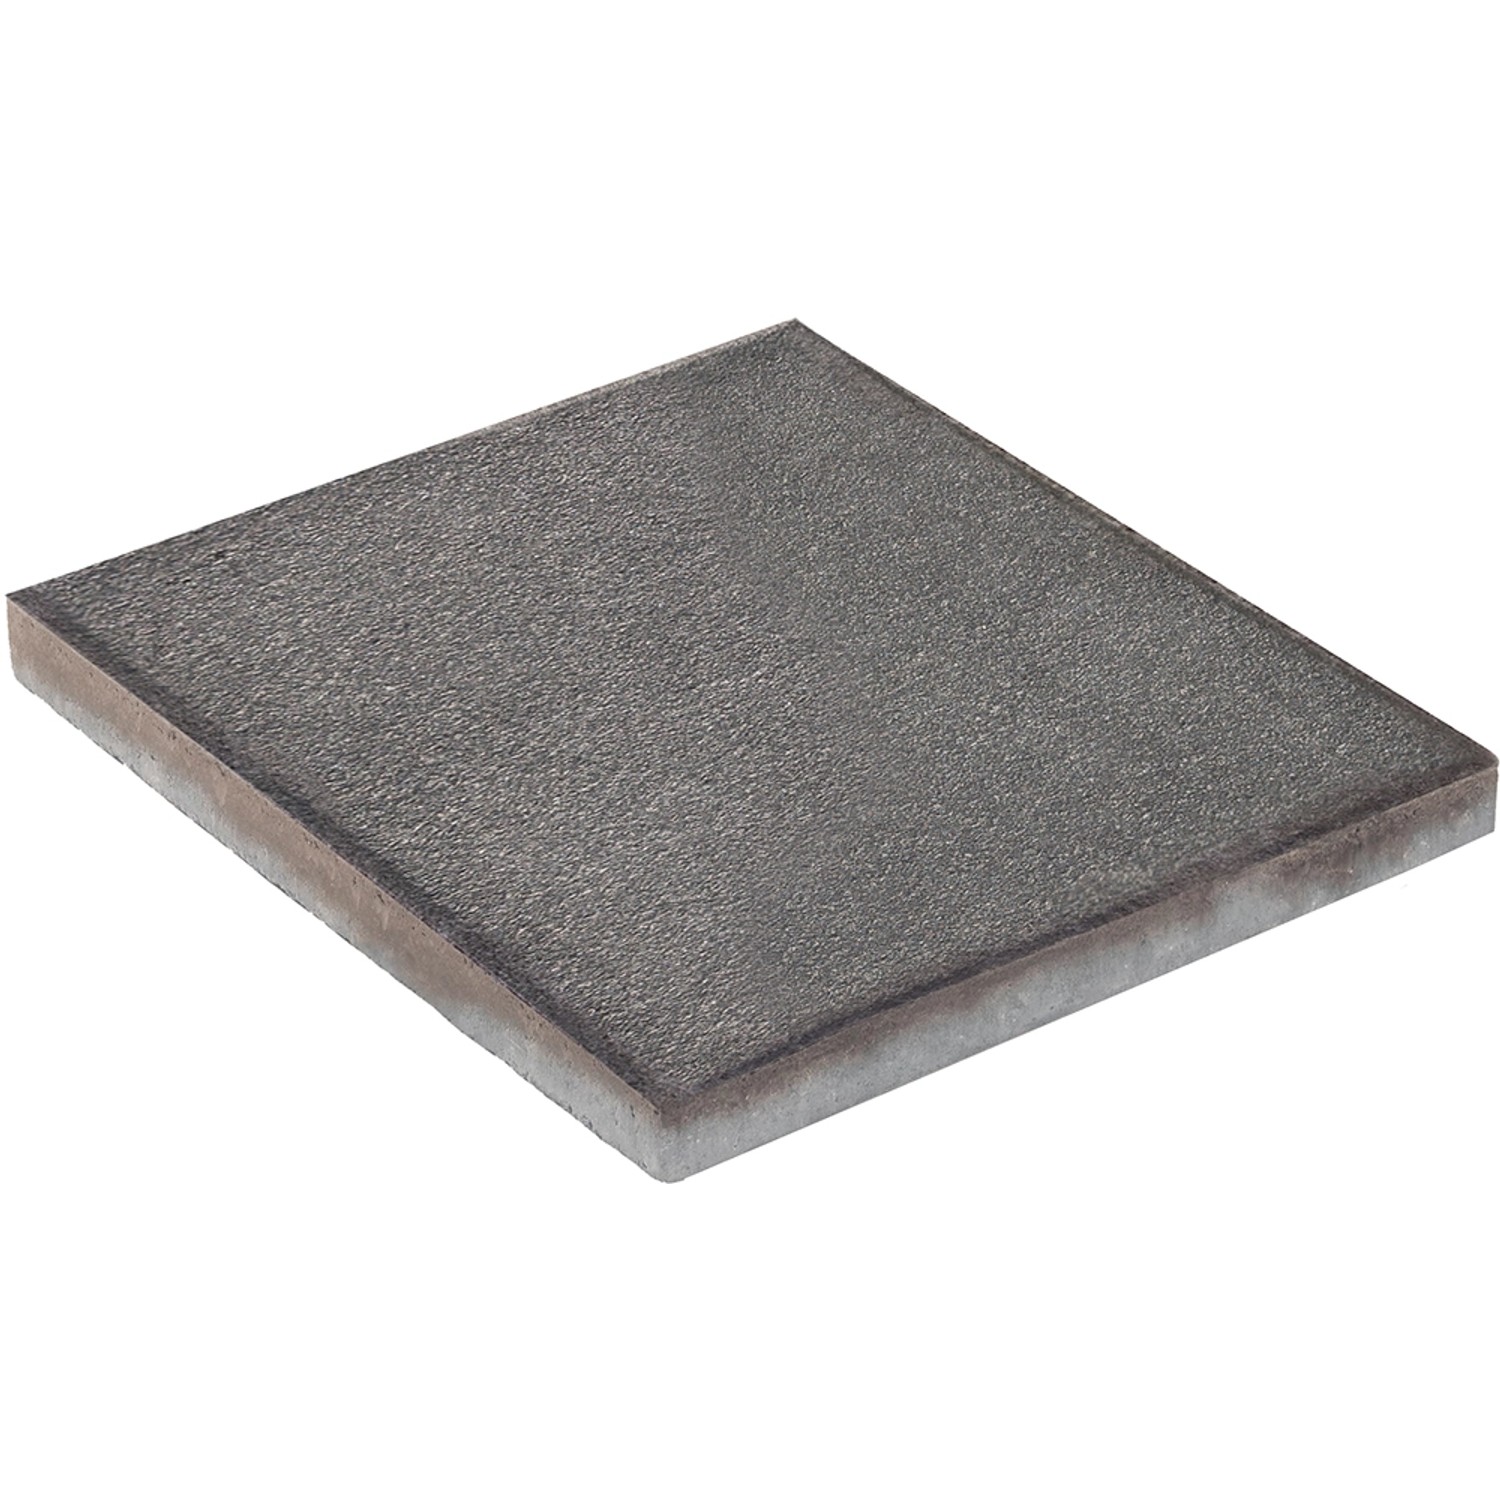 Diephaus Terrassenplatte Nano Tec Schwarz-Basalt 40 x 40 x 4 cm